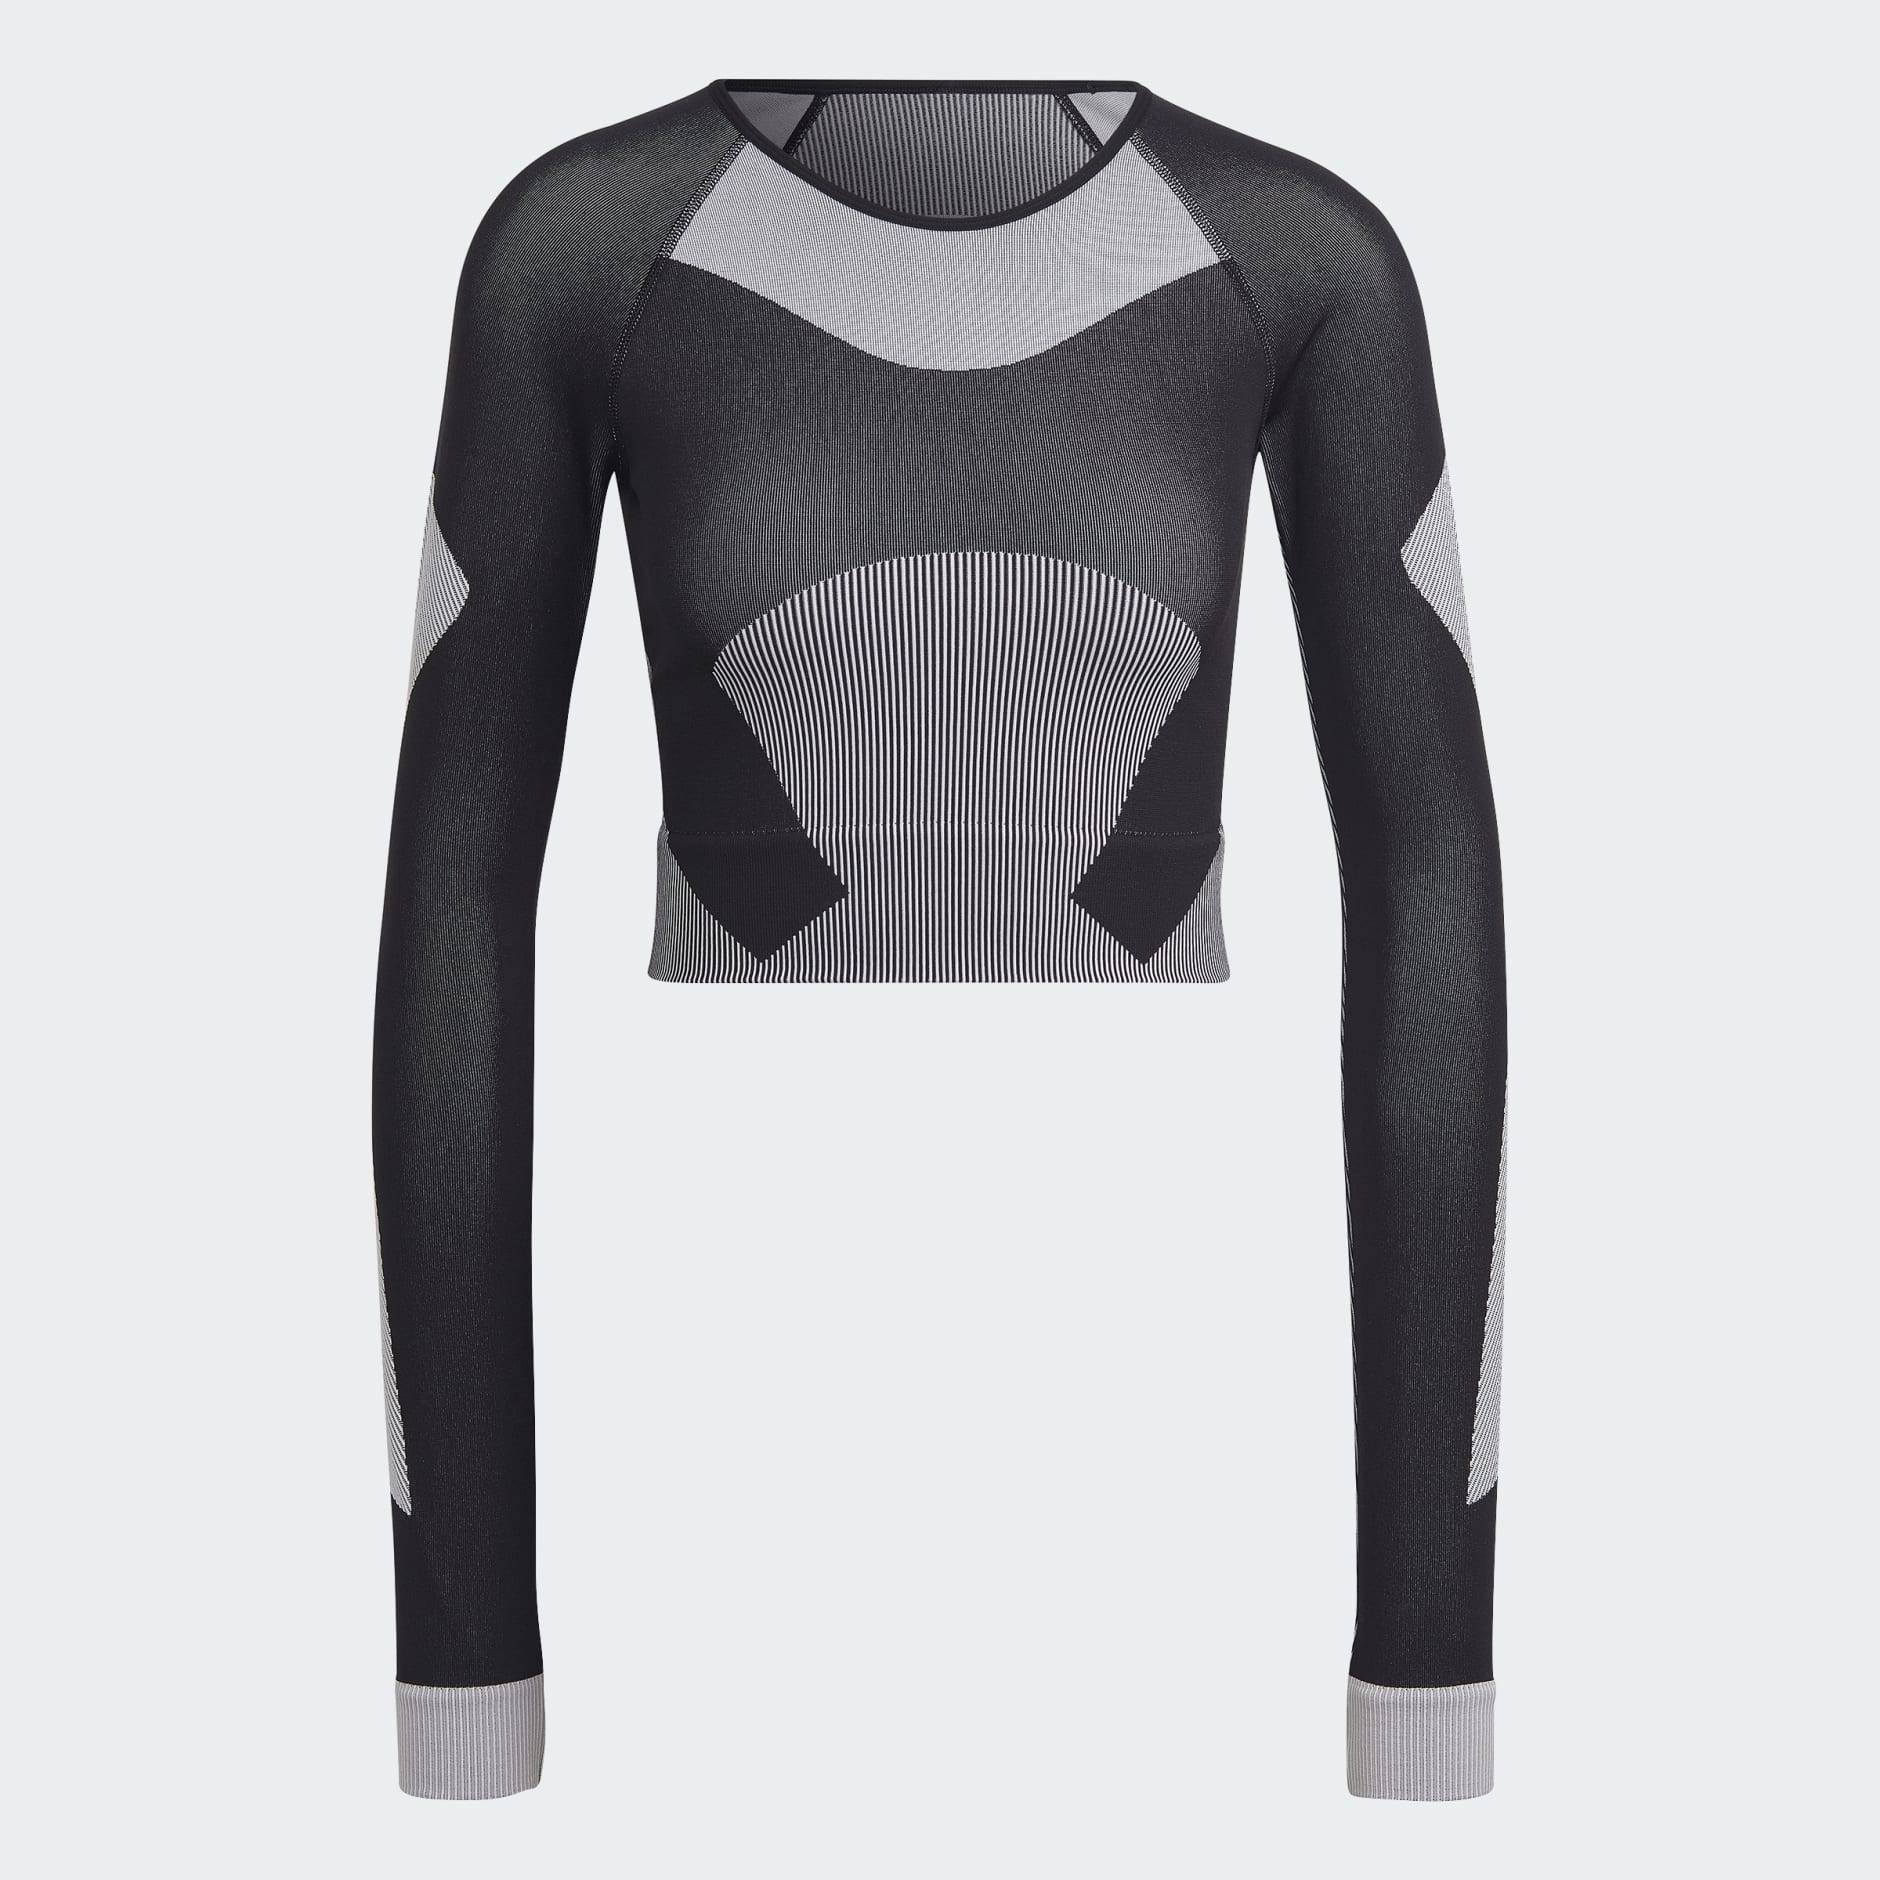 Clothing - adidas by Stella McCartney TrueStrength Yoga Crop Top